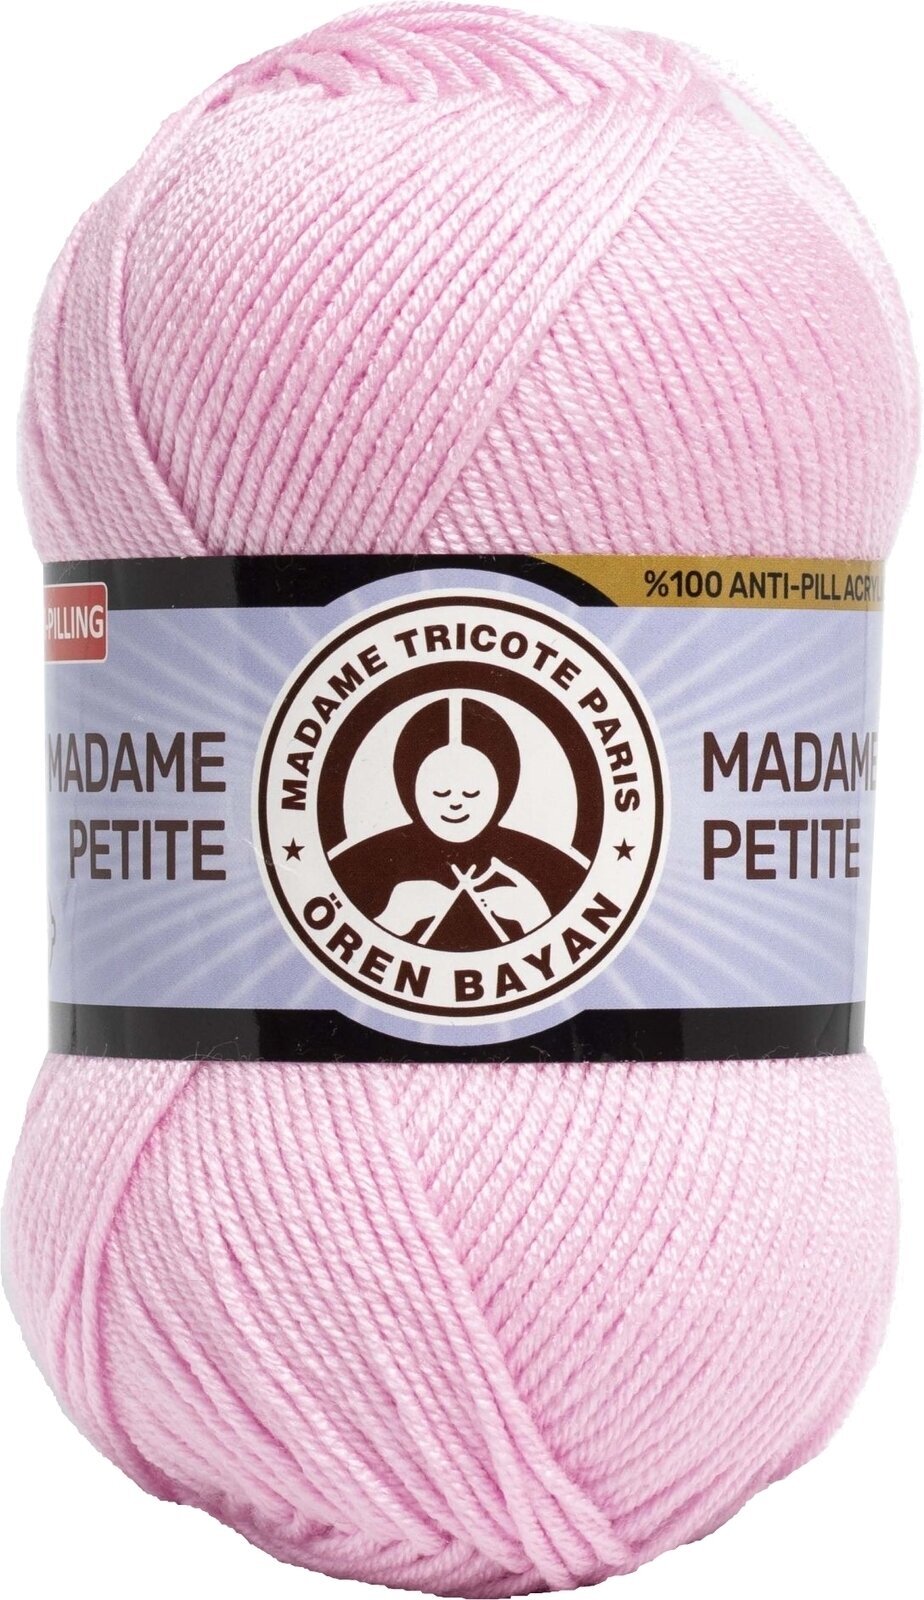 Pletací příze Madame Tricote Paris Madame Petite 3848 93 Pletací příze